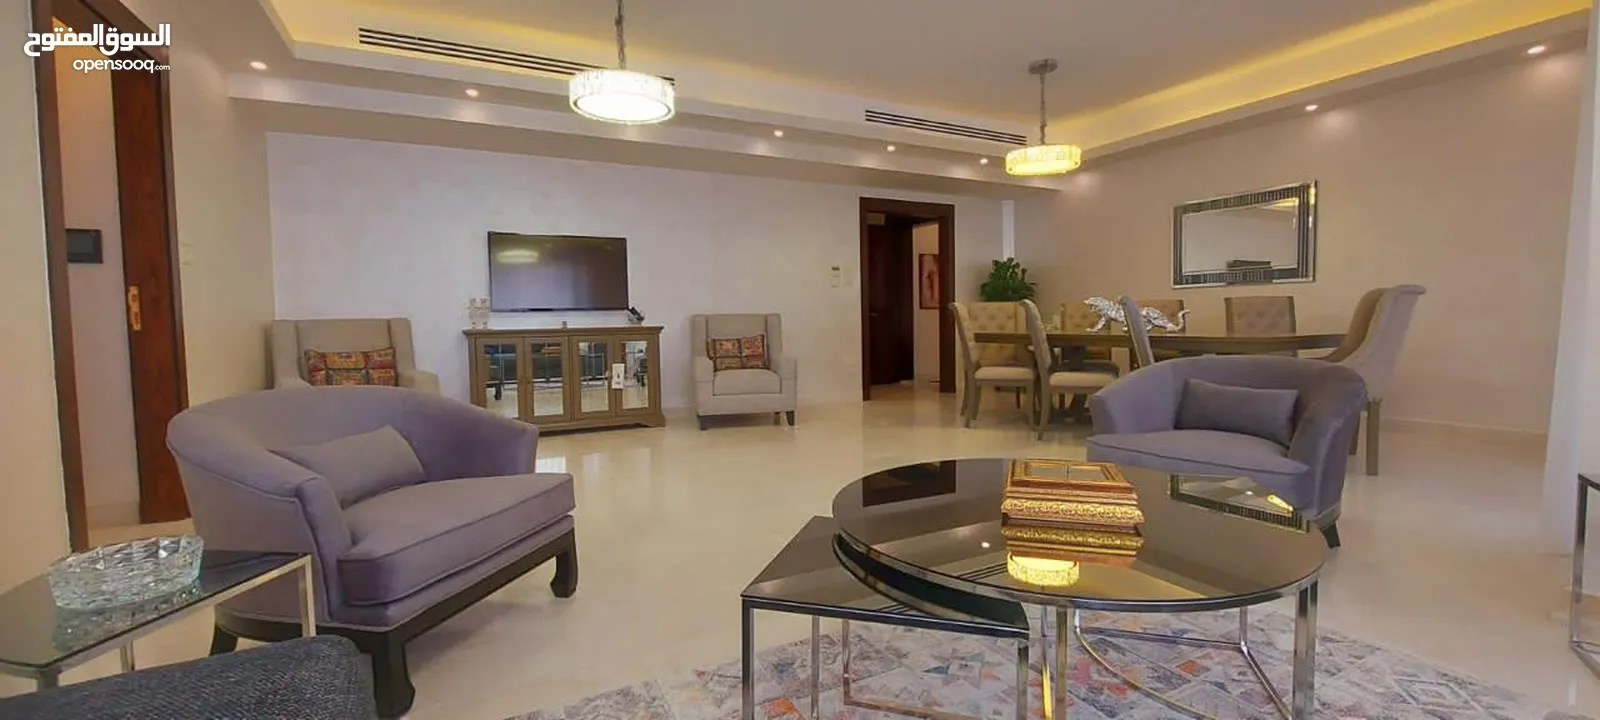 شقة مفروشة فاخرة في - دير غبار - مساحة 200 متر ثلاث غرف نوم بفرش مودرن (6636)